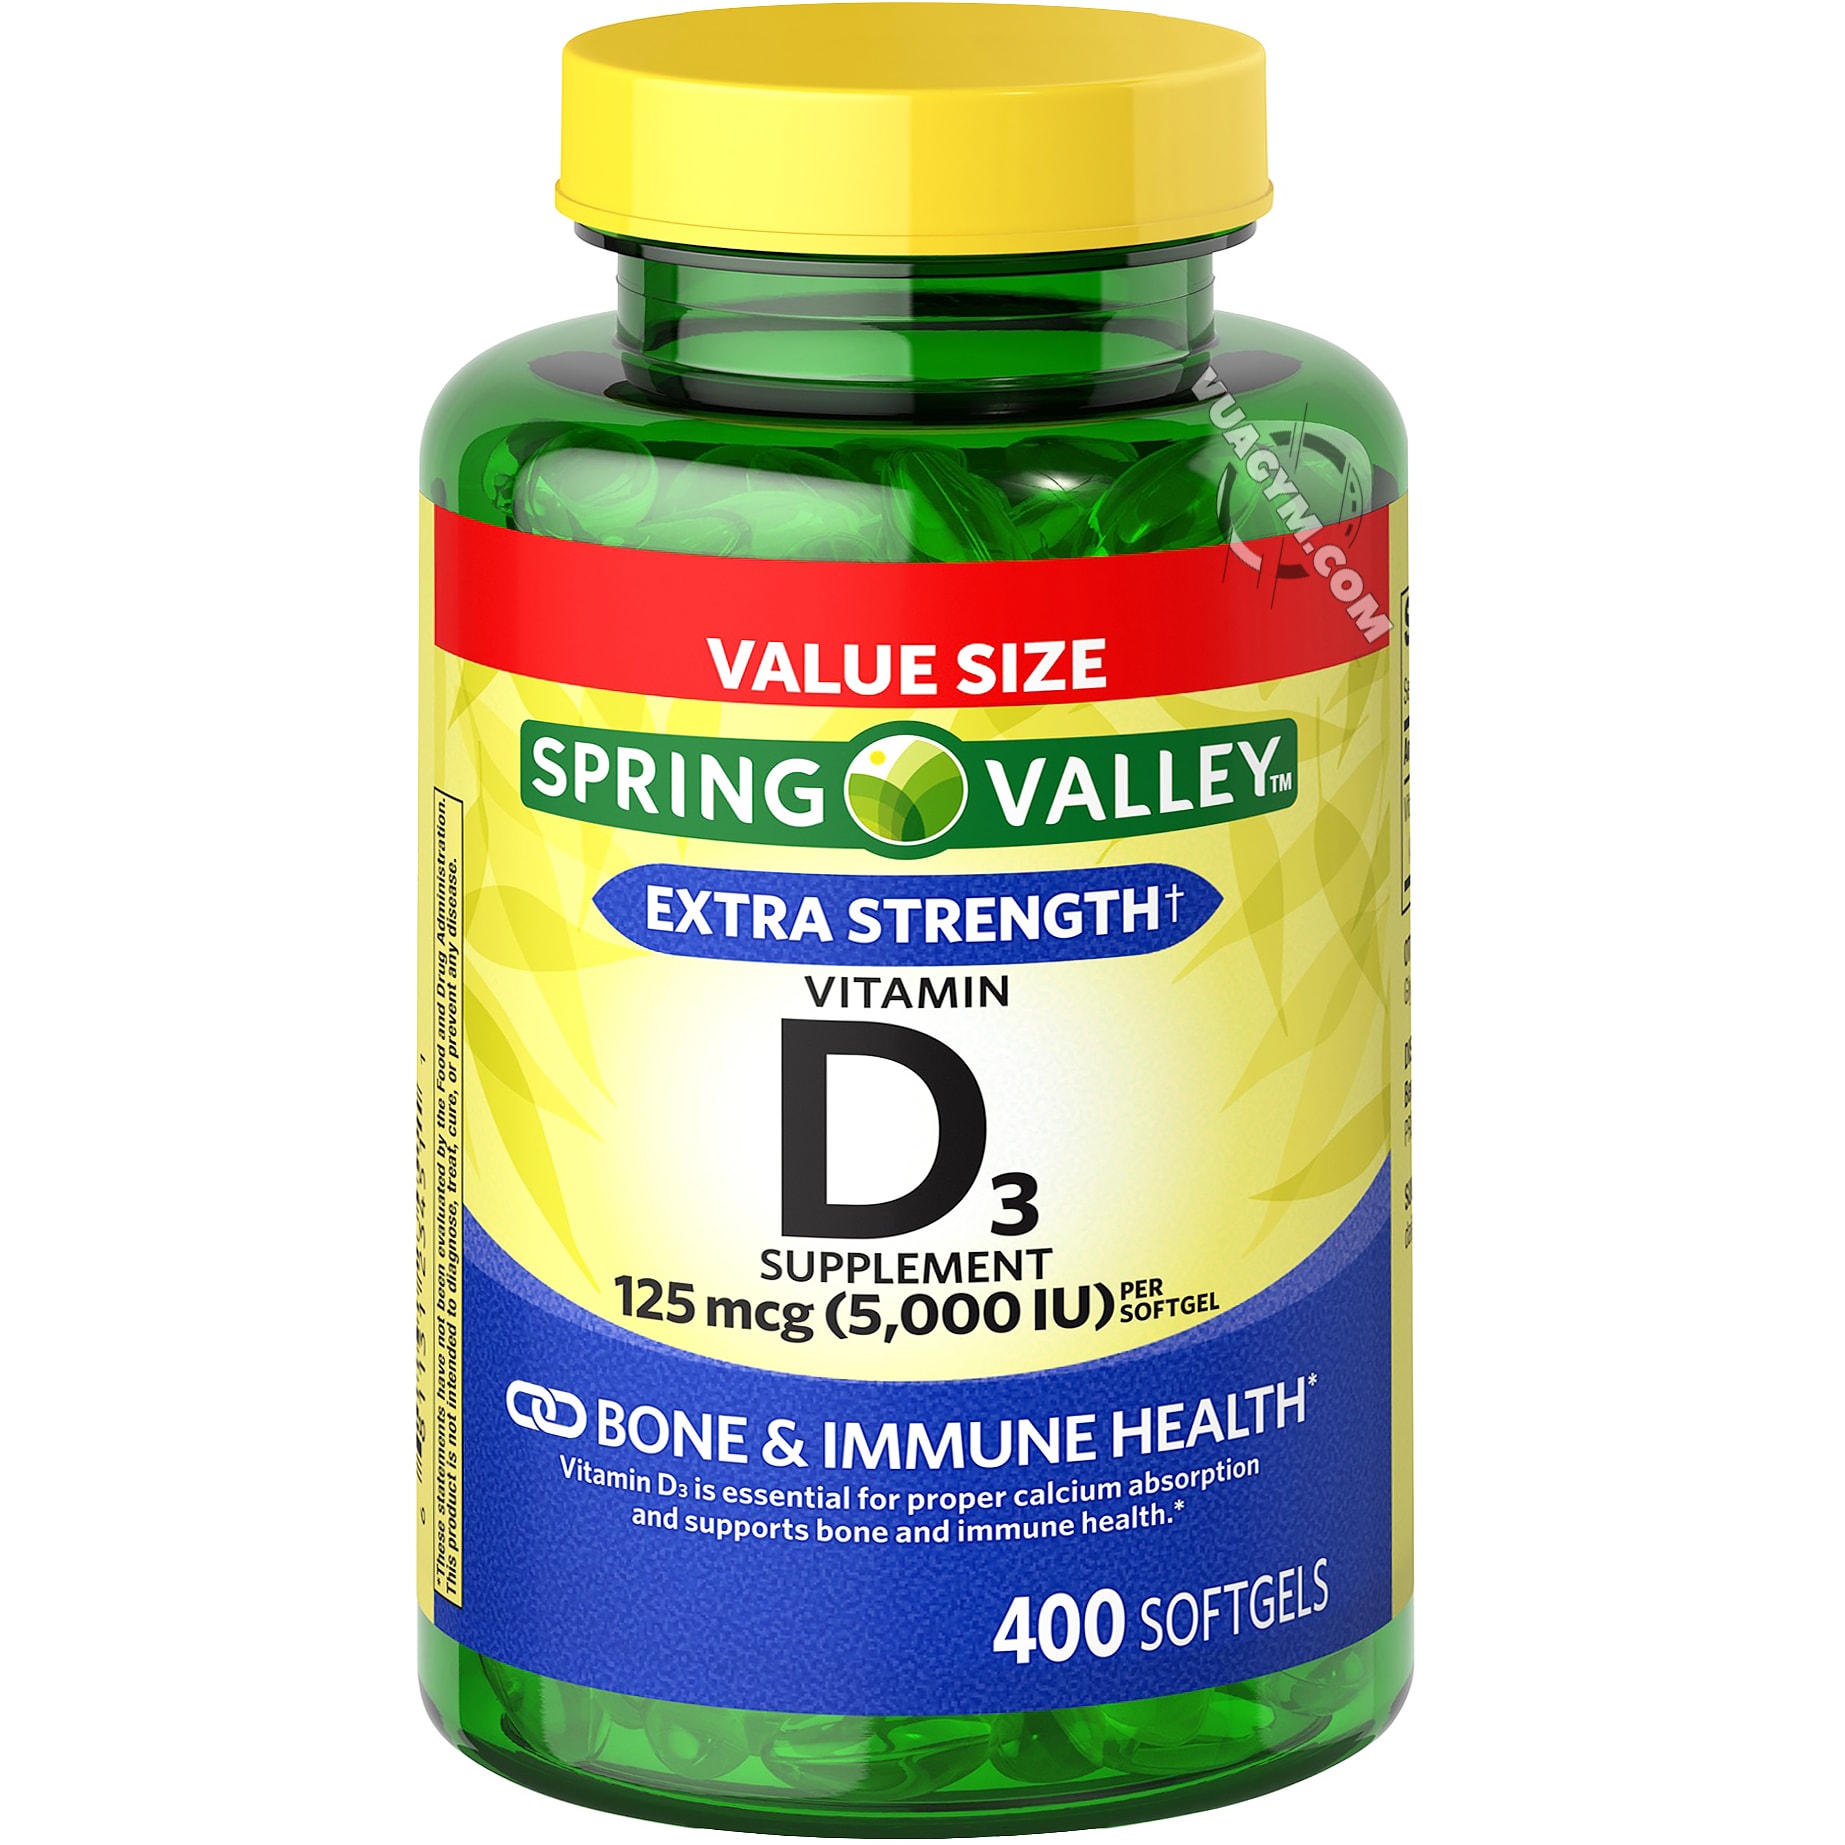 Những người nào cần bổ sung Vitamin D3 nhiều hơn?
